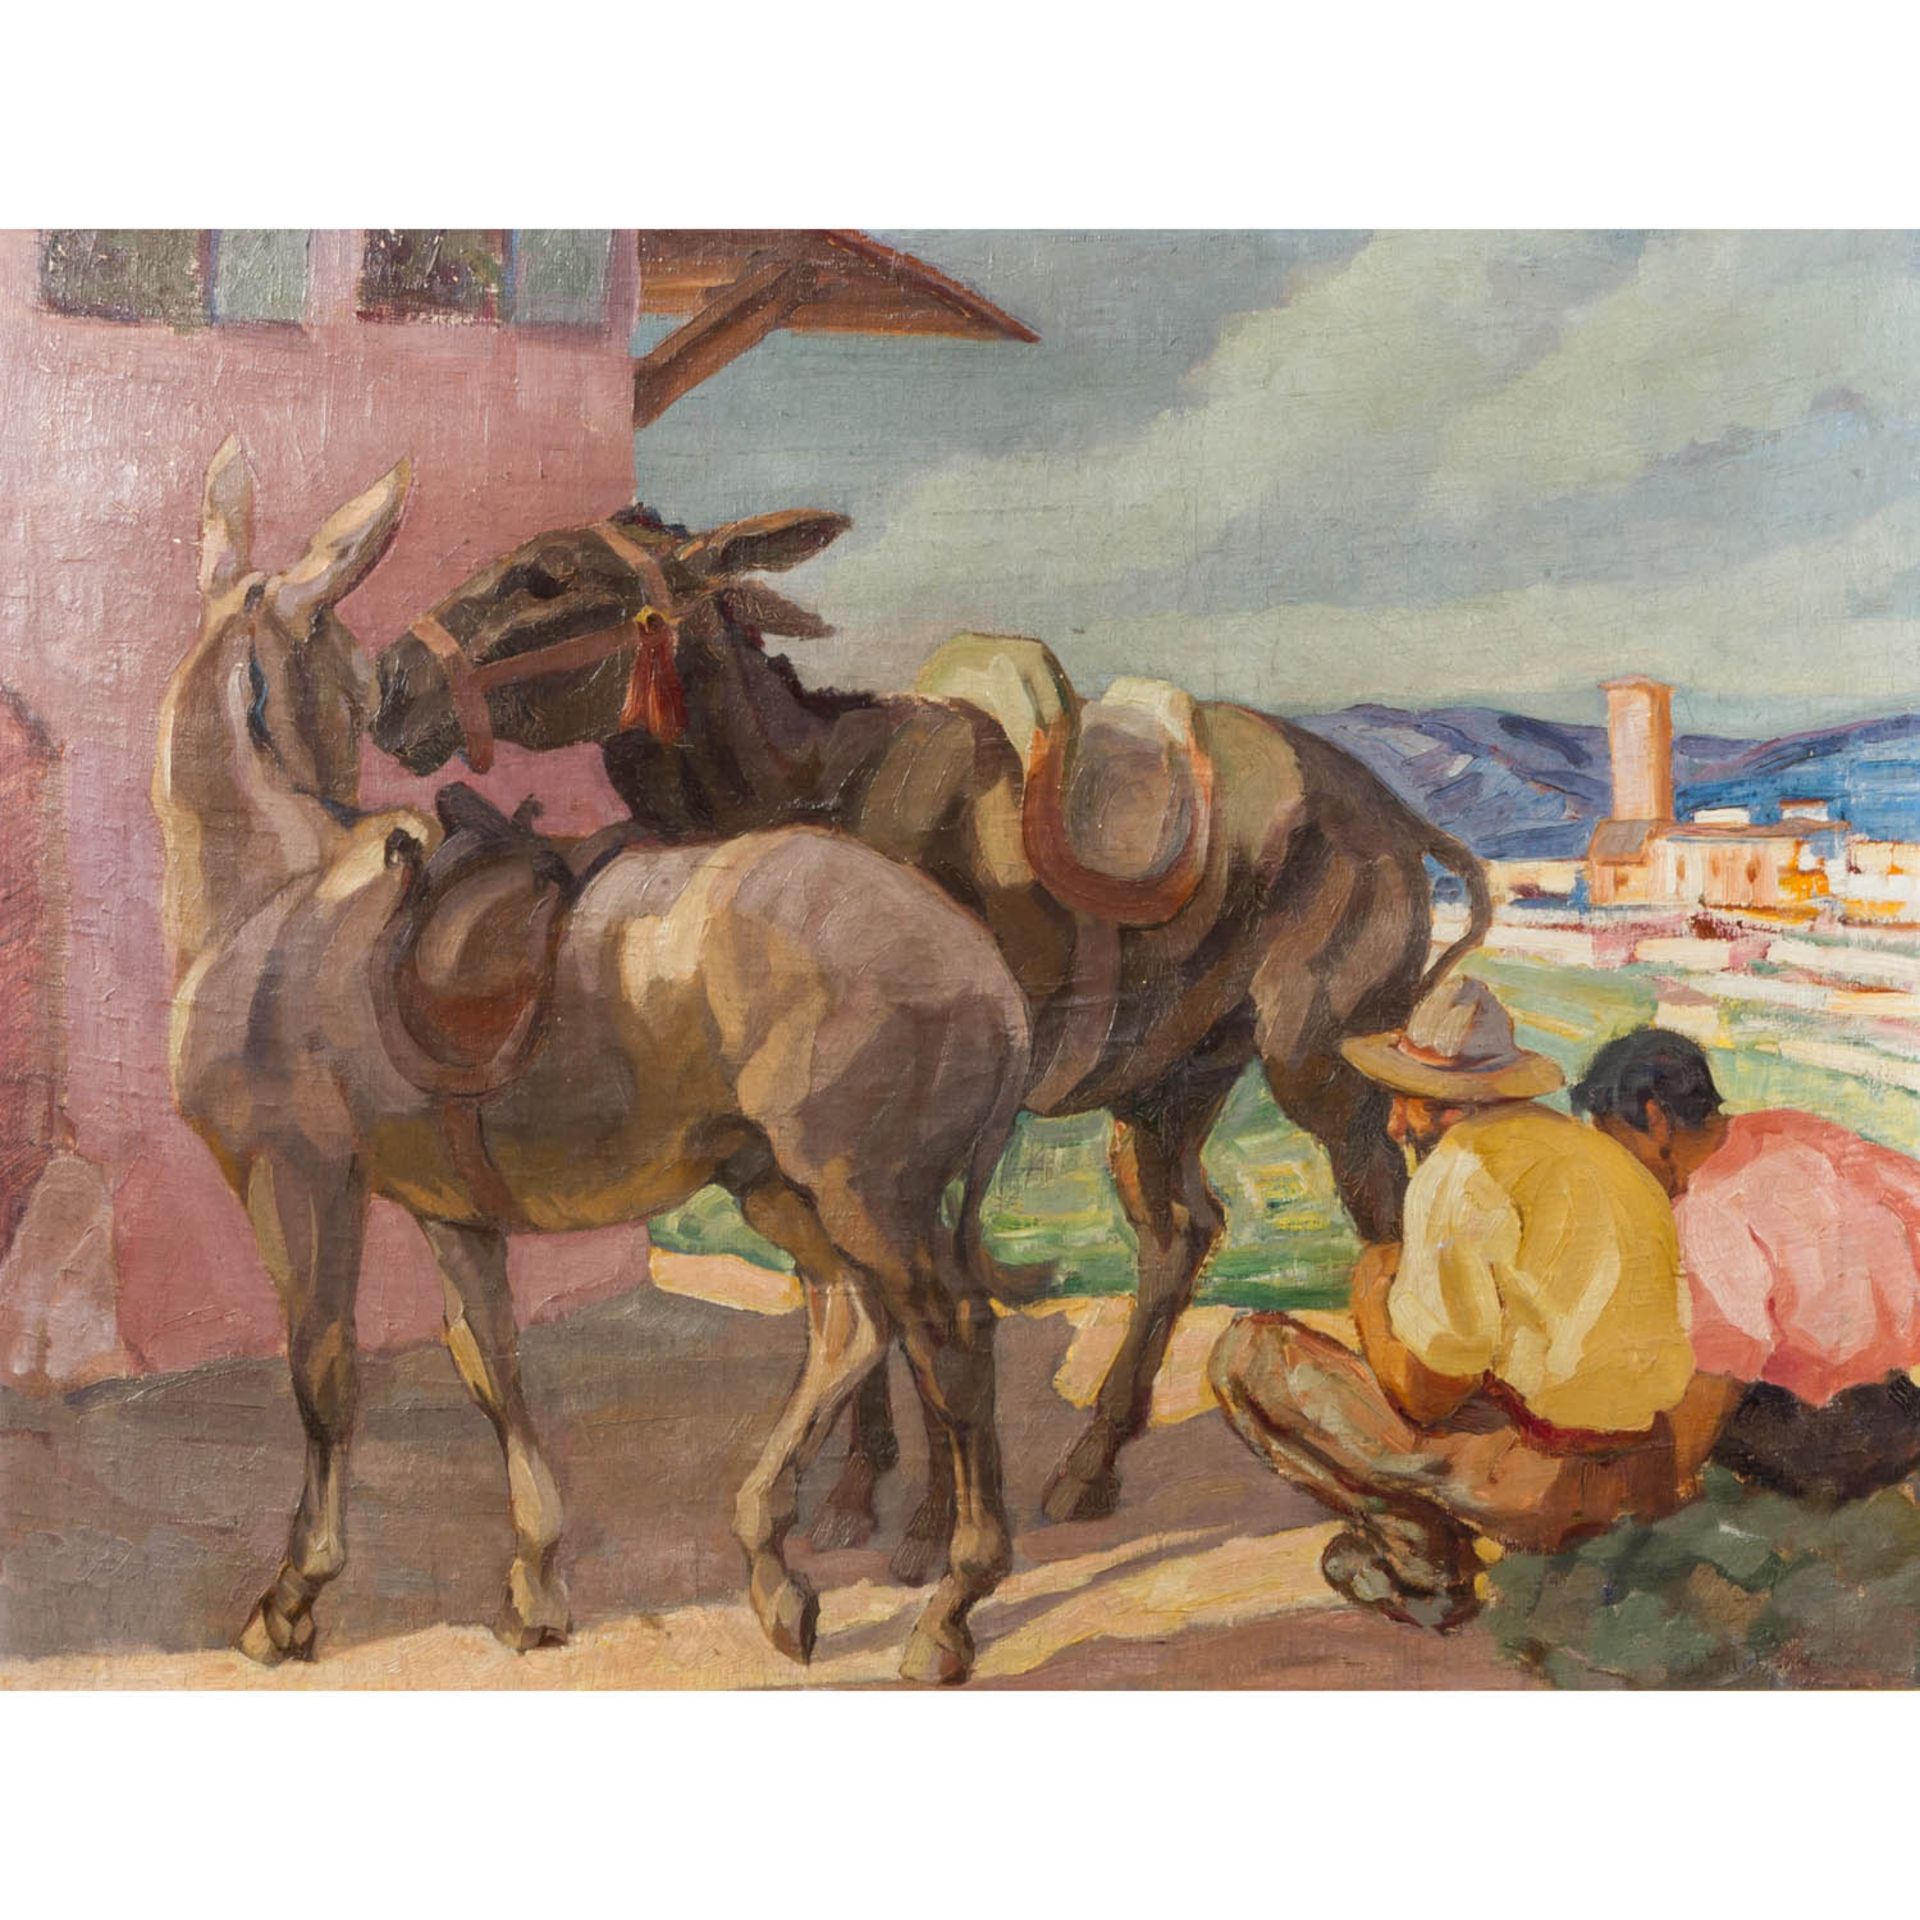 Wedel?, wohl WEDEL-KÜCKENTHAL, EDITH (1893-1968), "Zwei Bauern mit Eseln vor dem Haus", <br